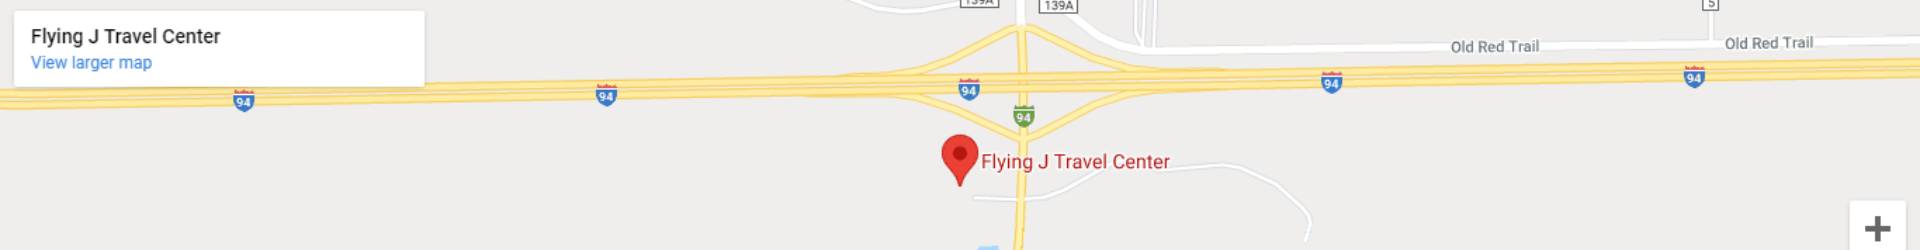 Flying J 511 Travel Center